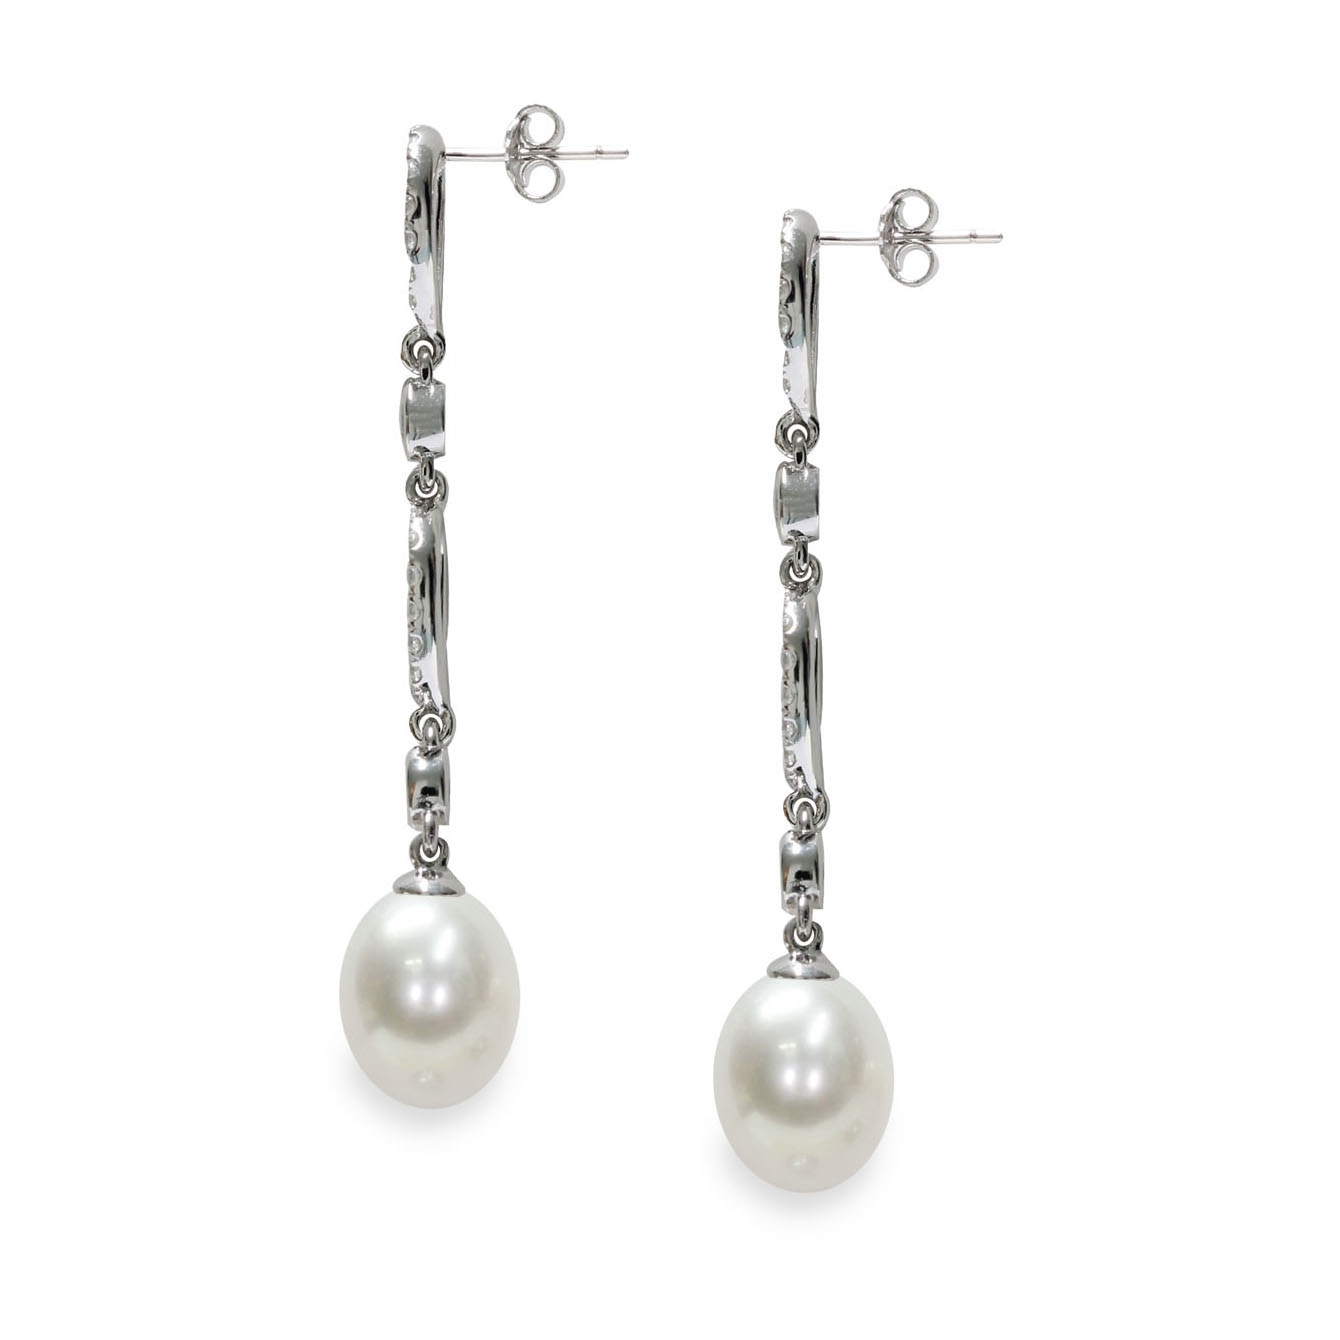 Primer d'argento 925 - Argento 999 - Argento Sterling  Creazione di gioielli  fai da te - France Perles - World of pearls